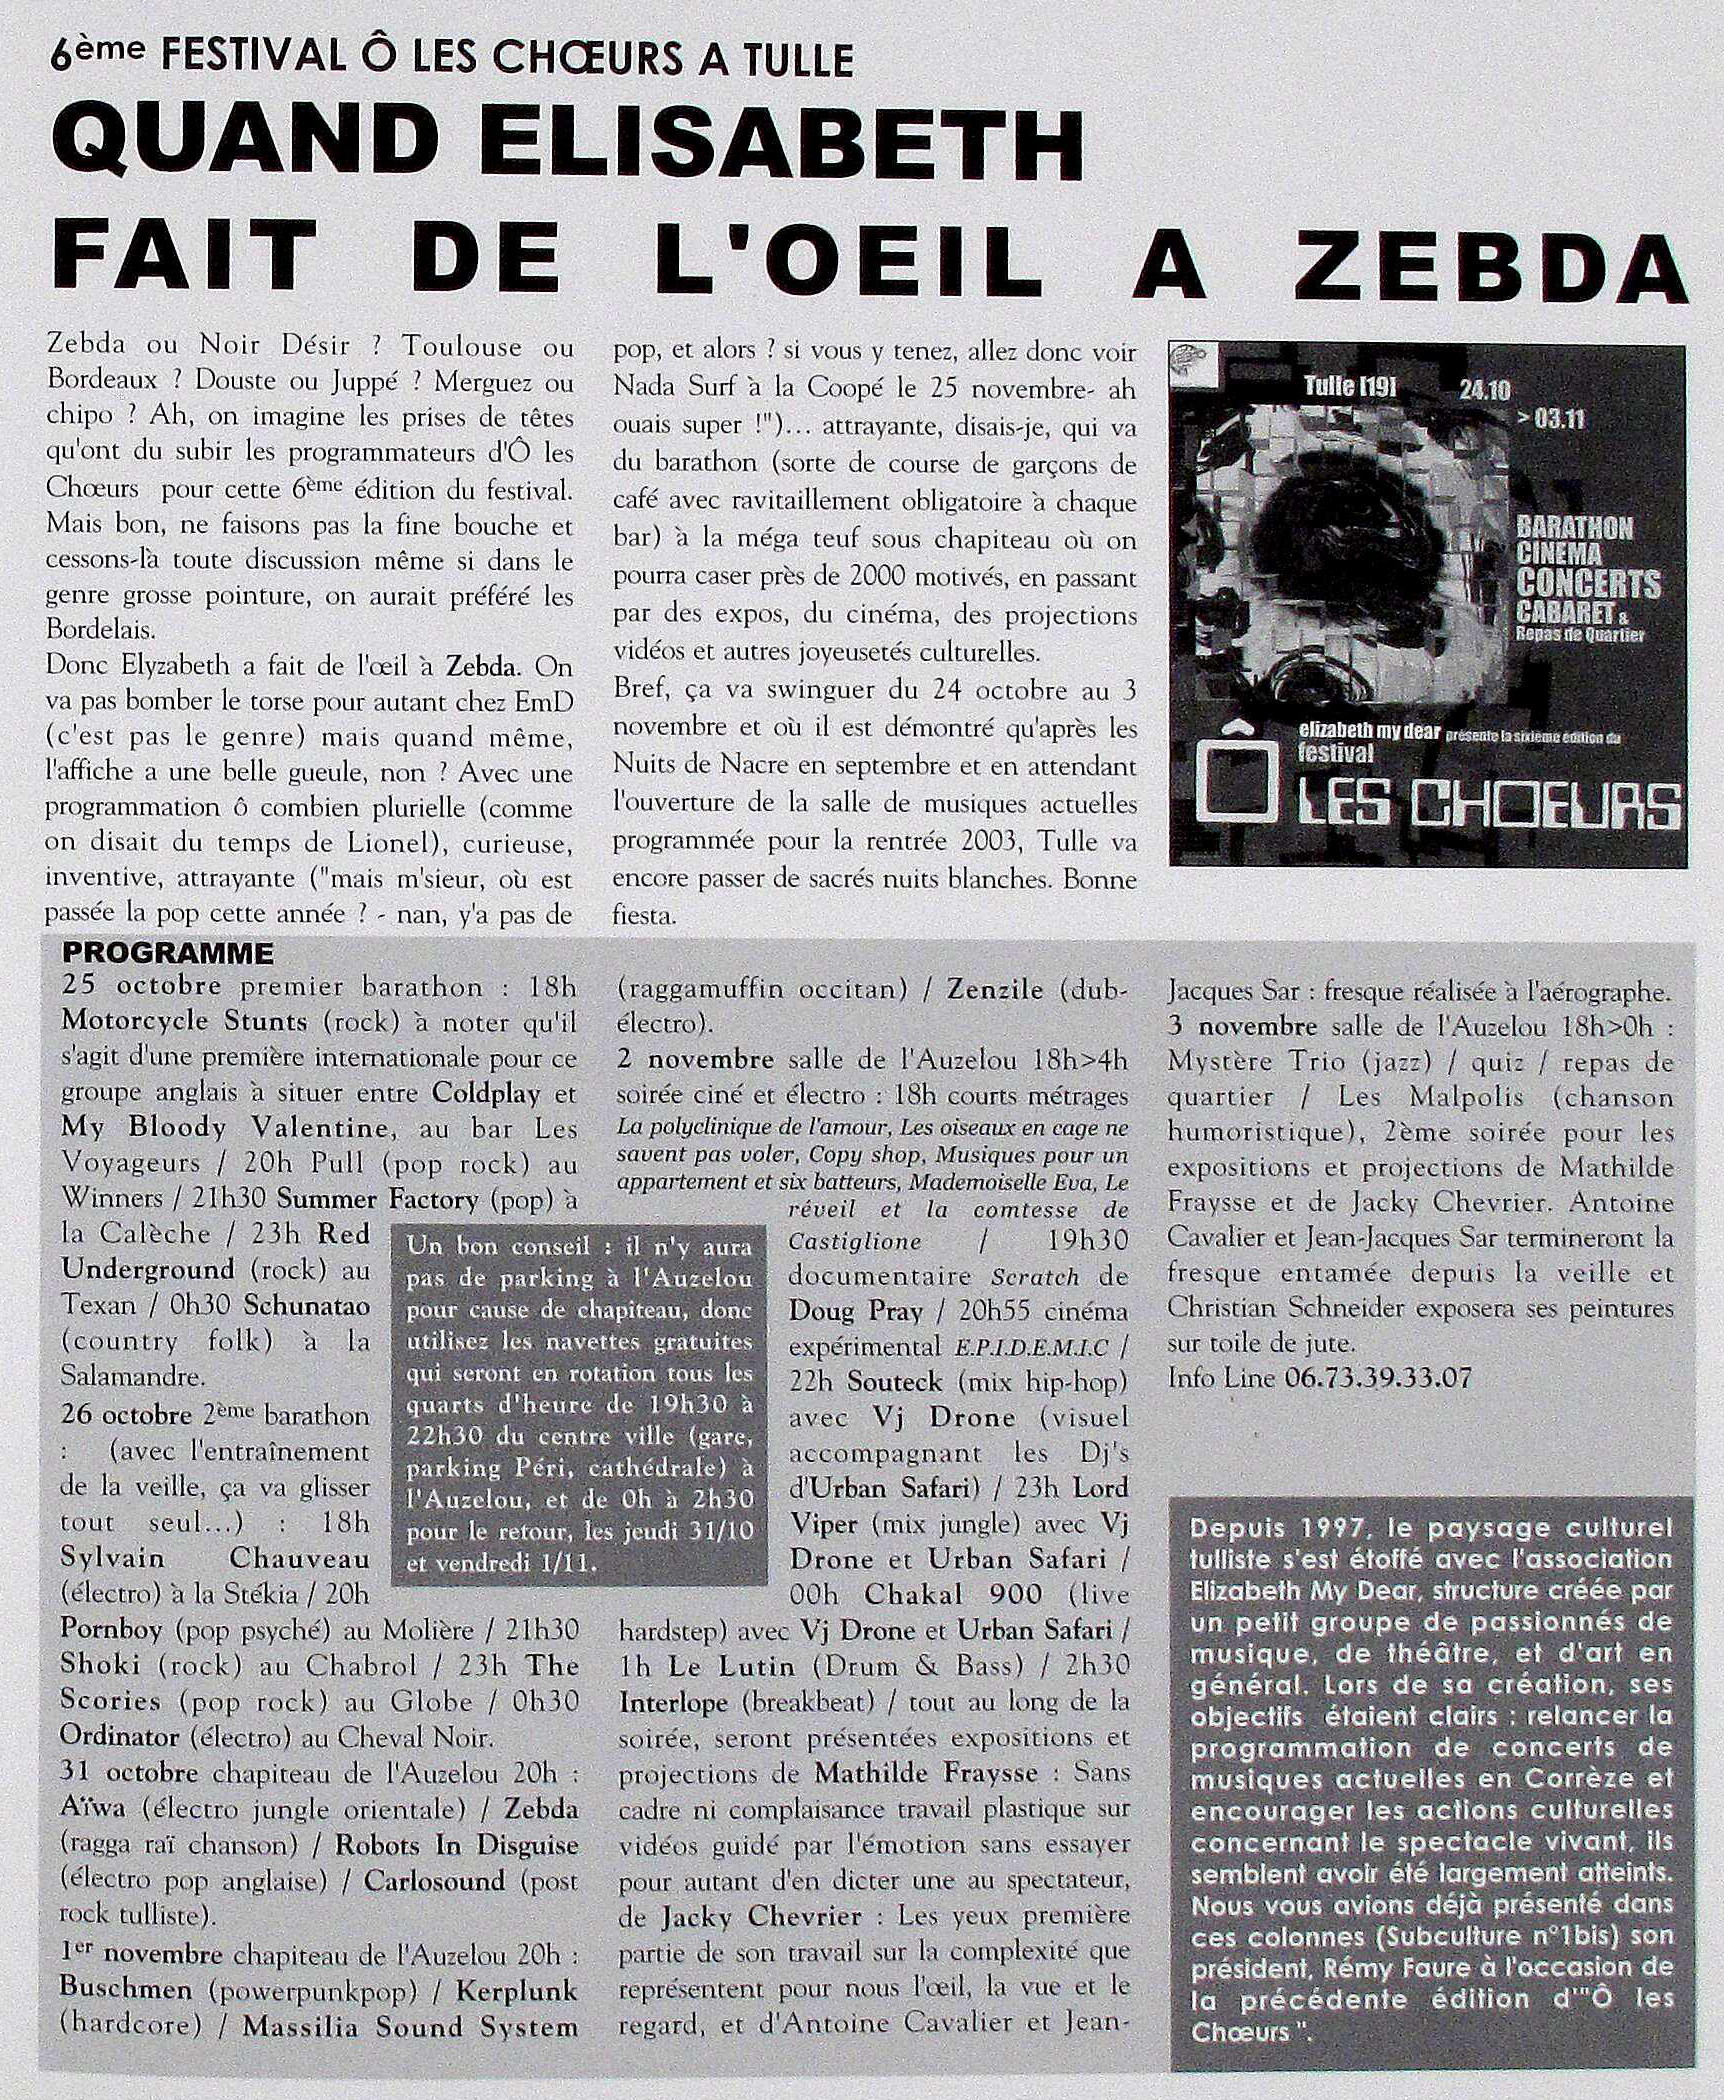 Le magazine Subculture consacre une page aux activités de l'association - Automne 2002 - Archives Dlqc